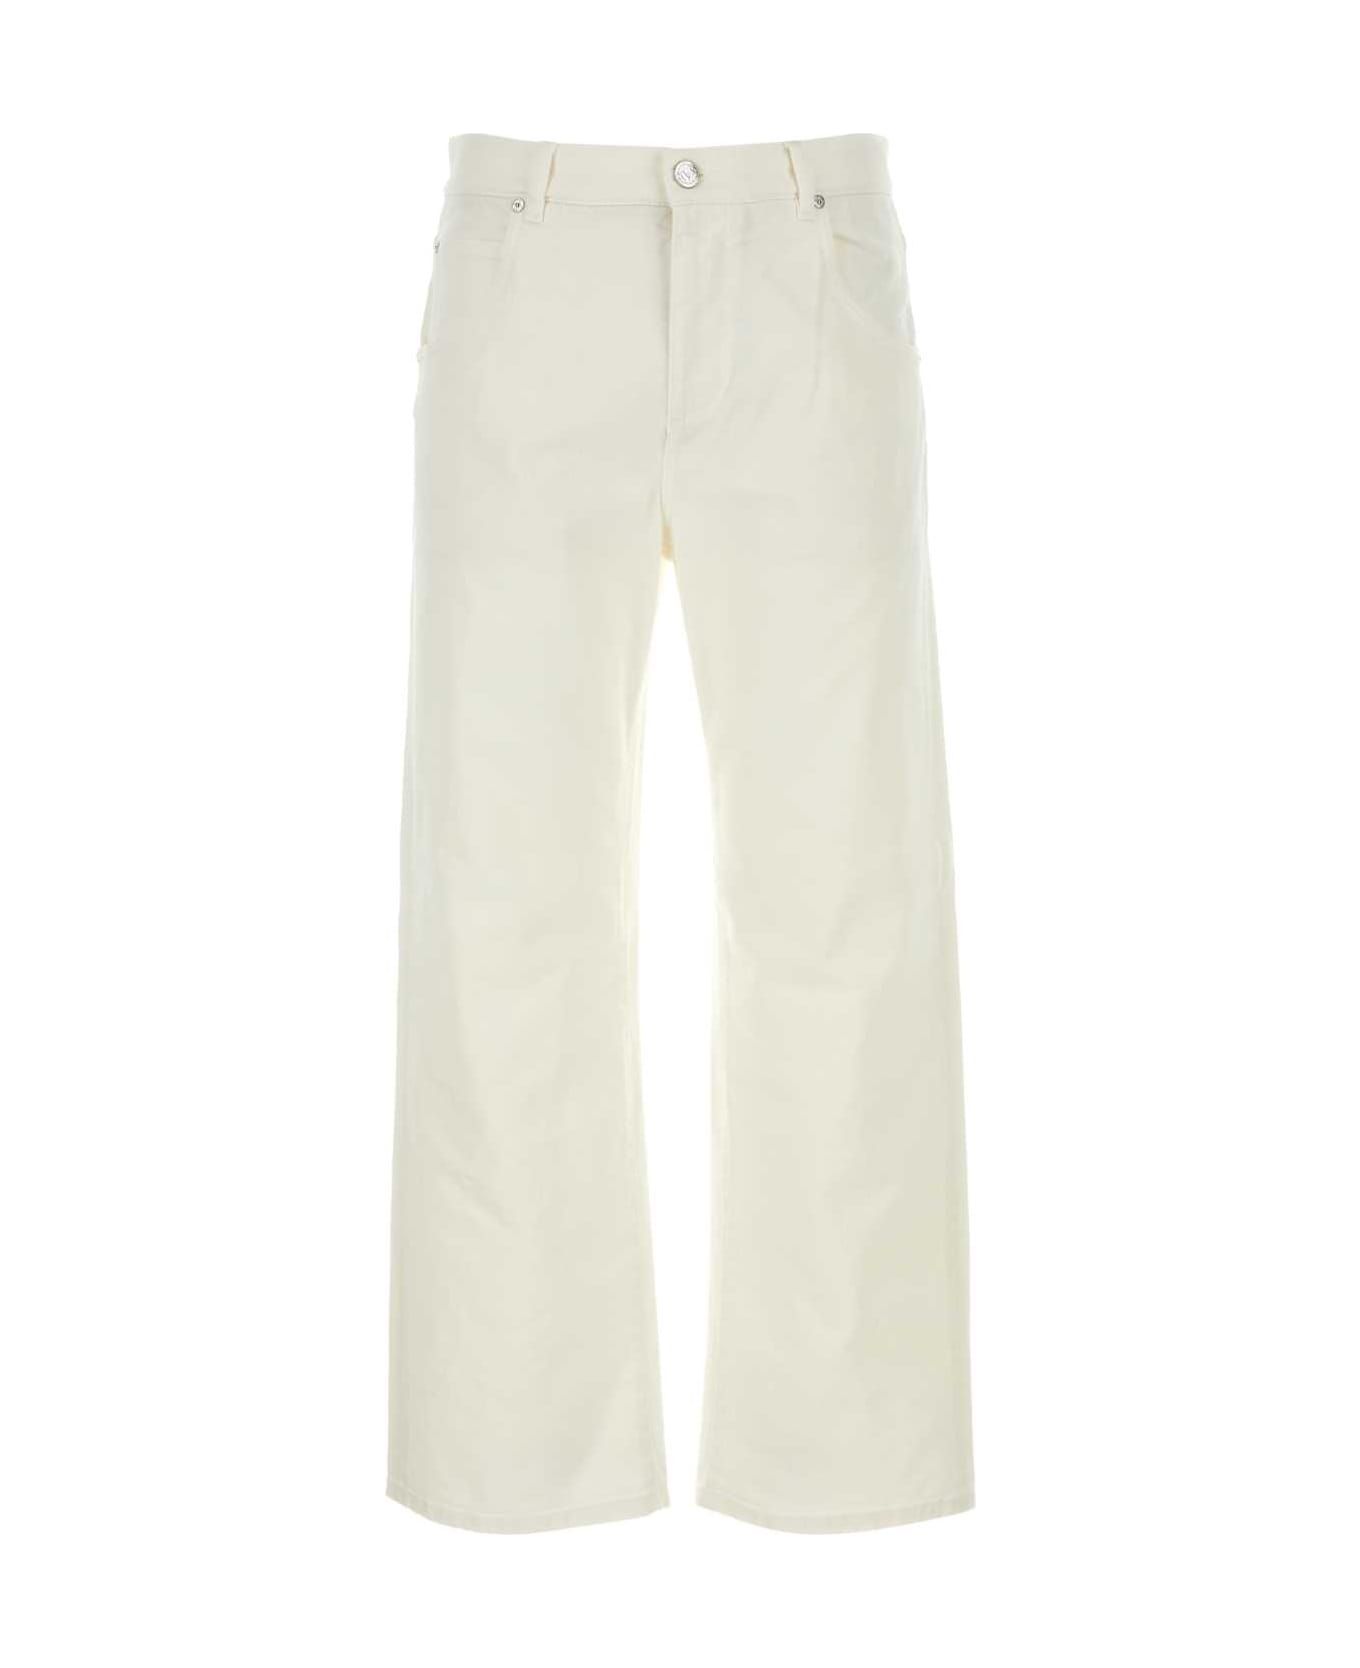 Etro Ivory Stretch Denim Jeans - White